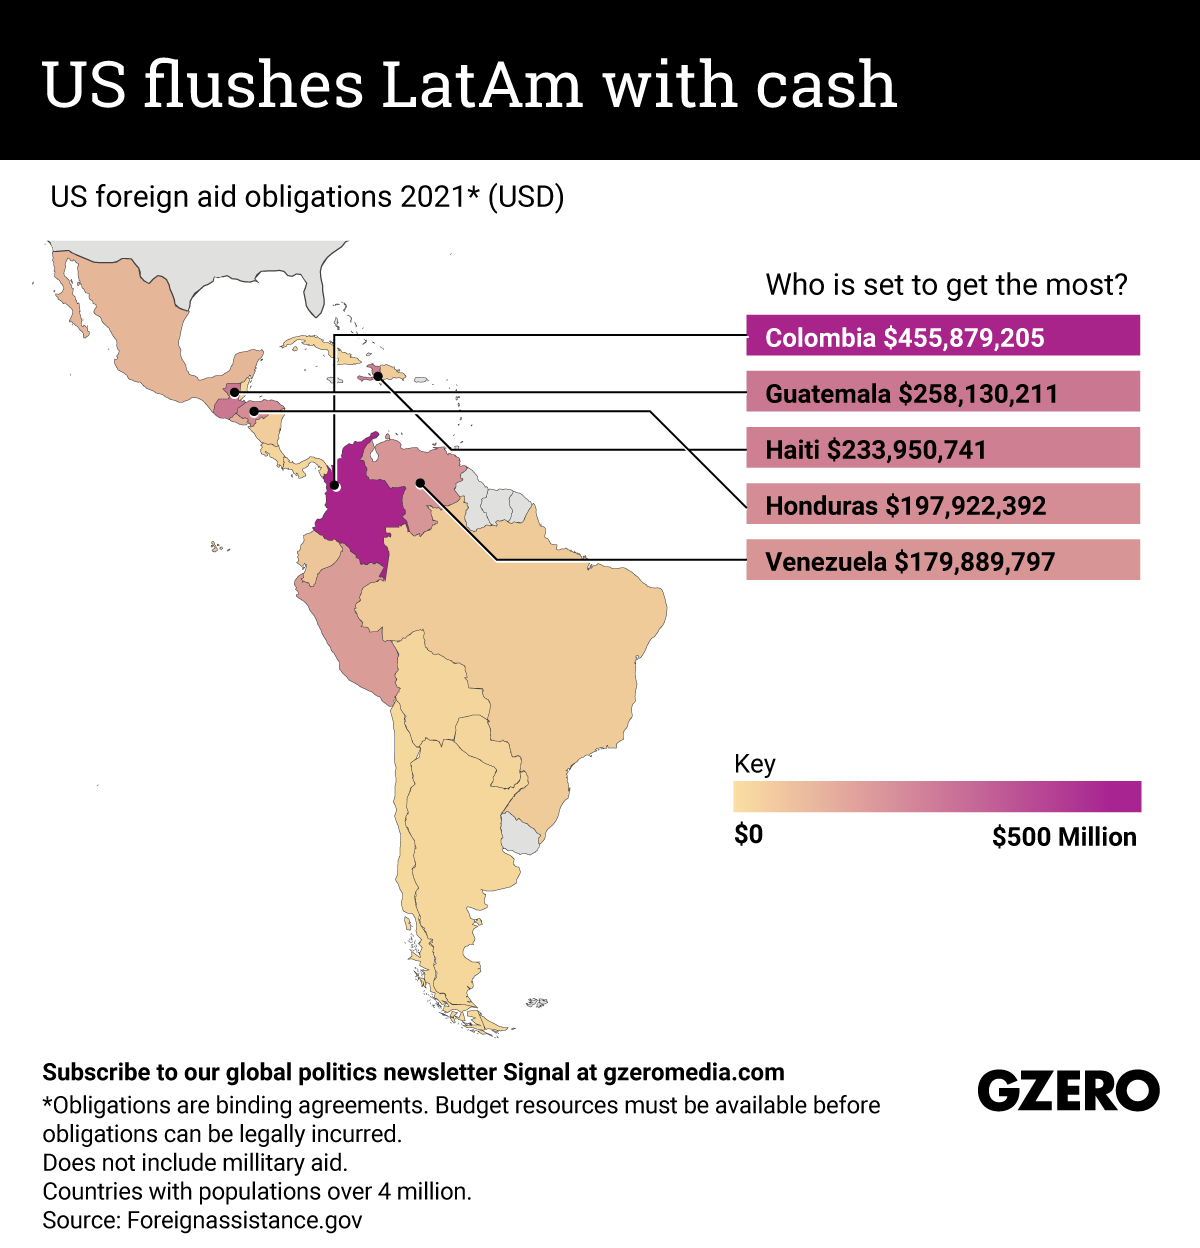 US flushes LatAm with cash